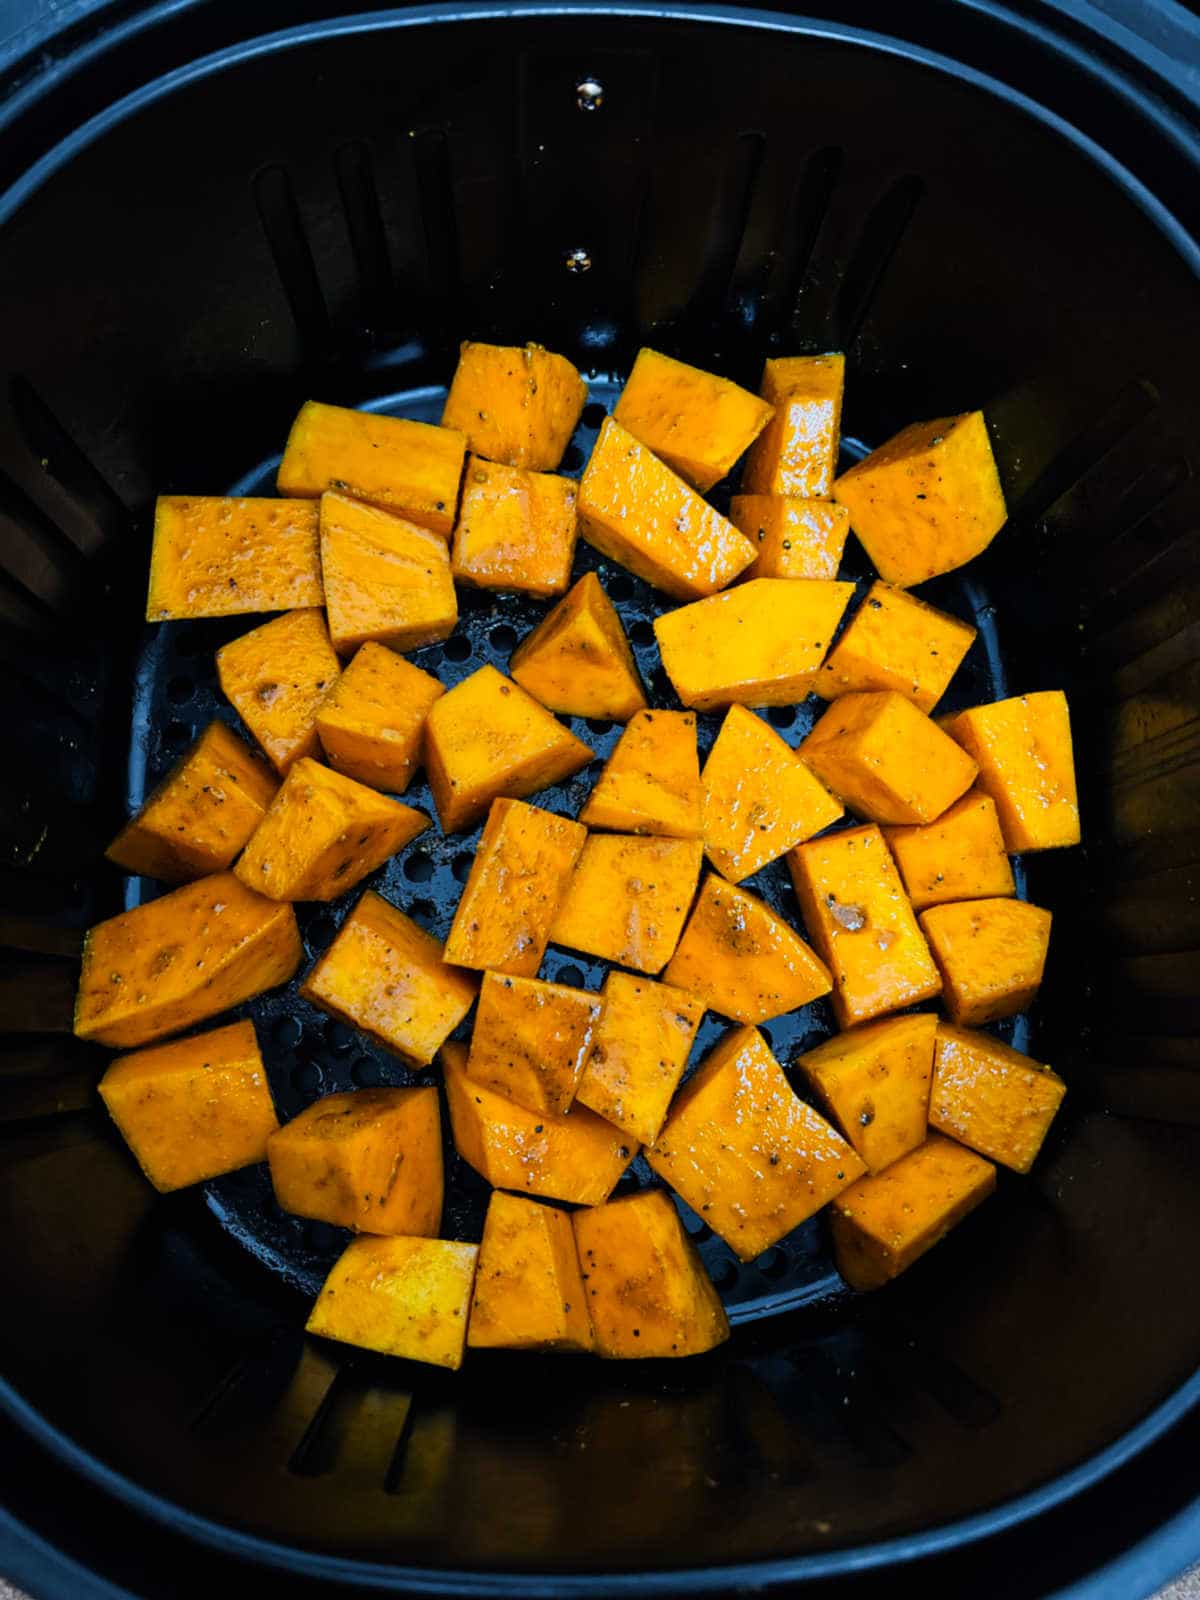 Pumpkin cubes in the air fryer basket.